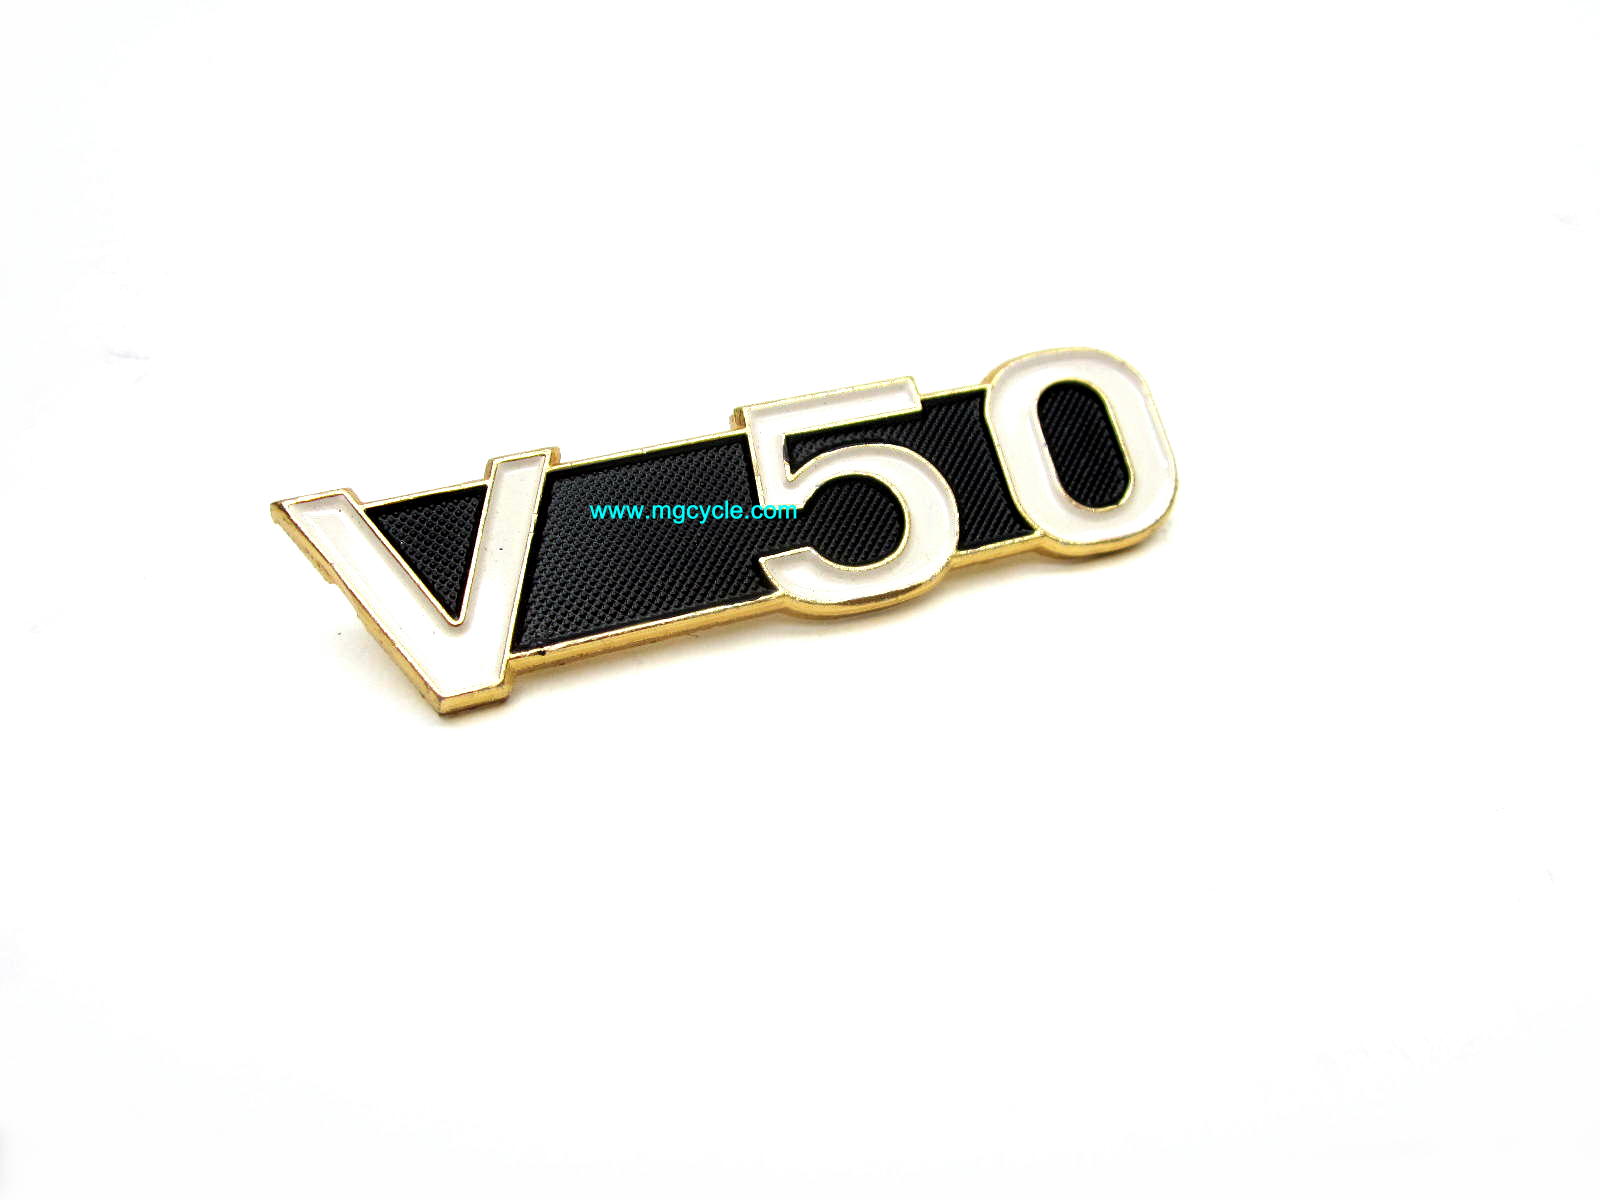 emblem V50 for side cover